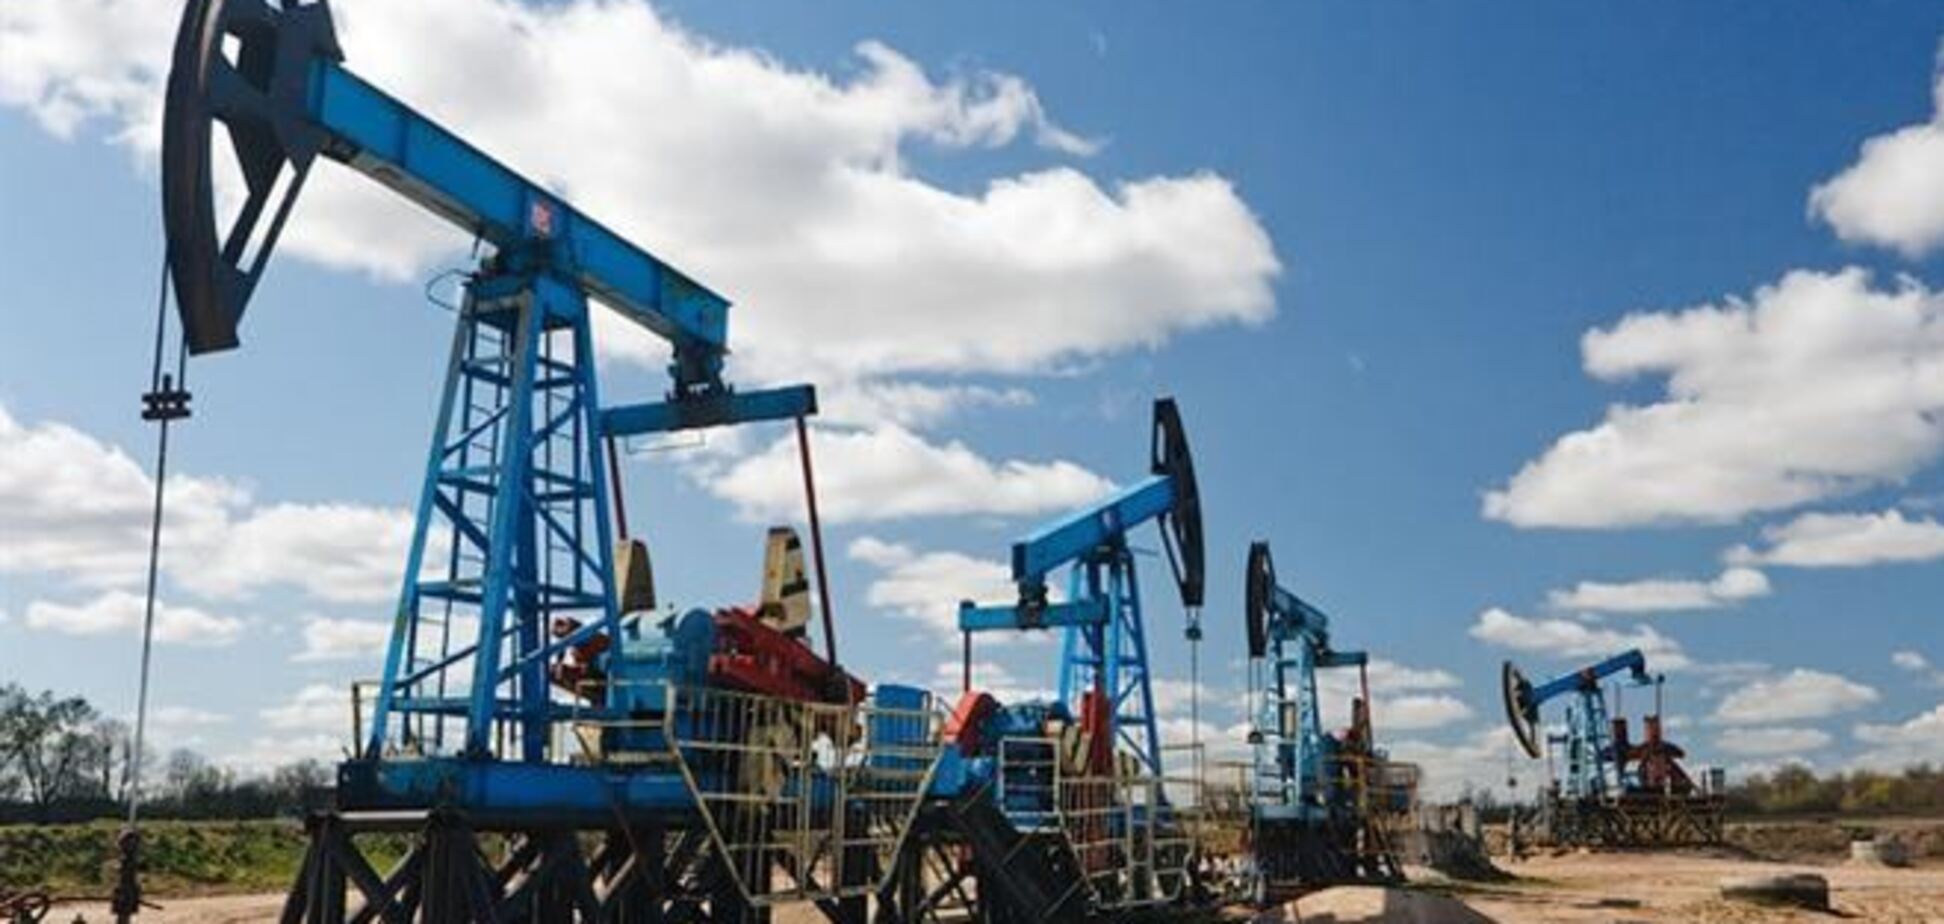 Добыча нефти на самом крупном месторождении в мире начнется в 2014 году